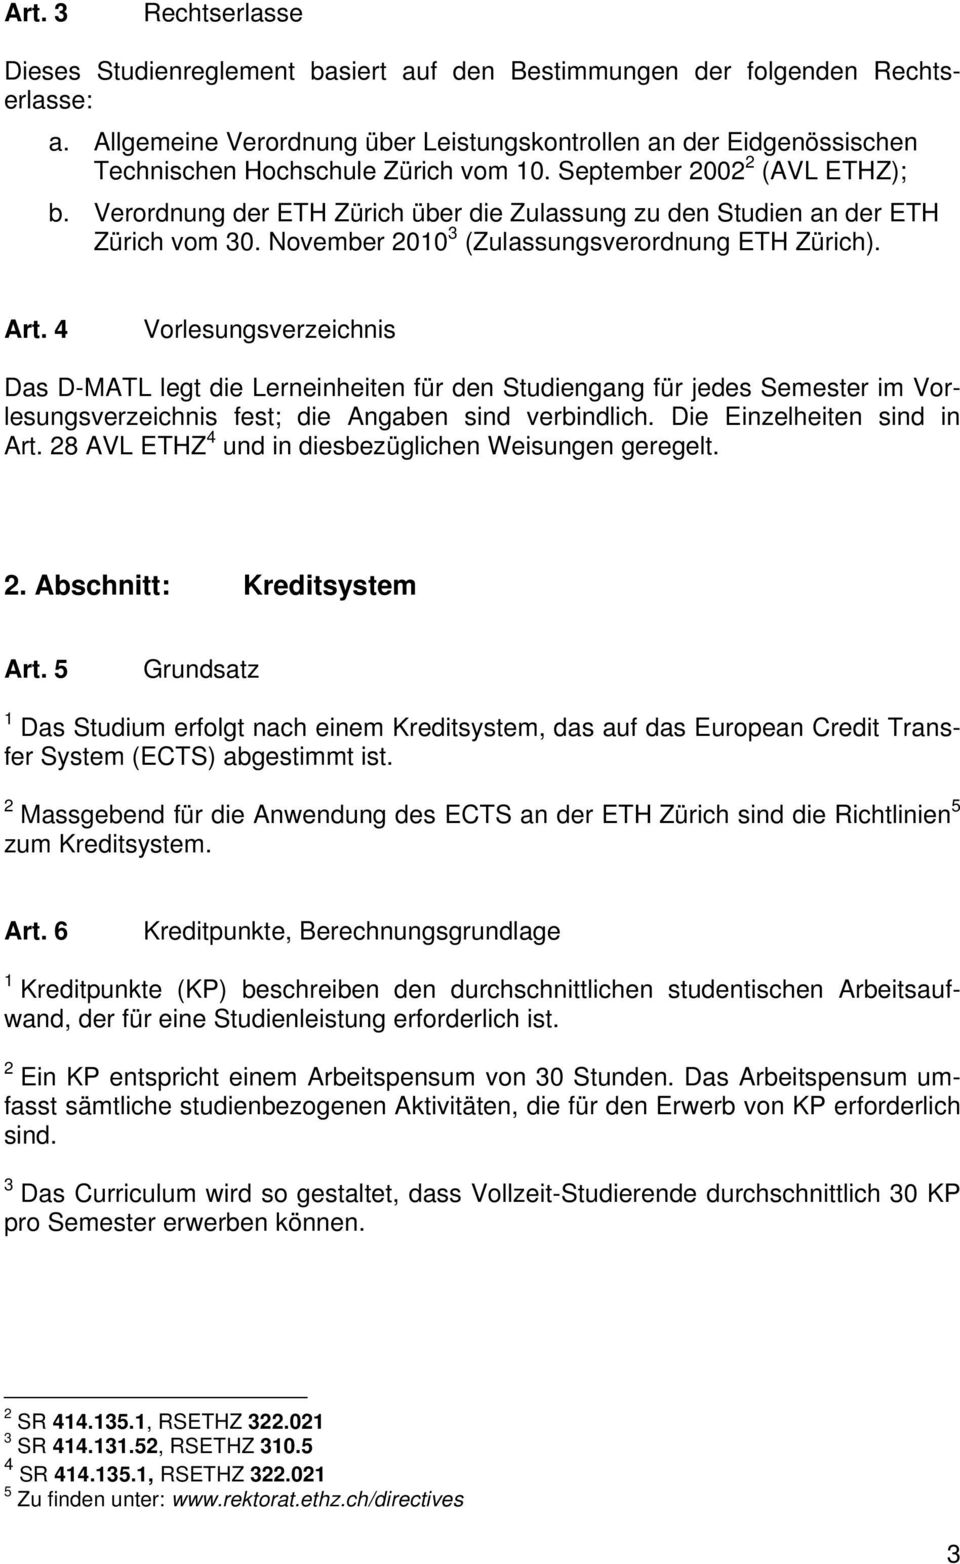 Verordnung der ETH Zürich über die Zulassung zu den Studien an der ETH Zürich vom 30. November 2010 3 (Zulassungsverordnung ETH Zürich). Art.